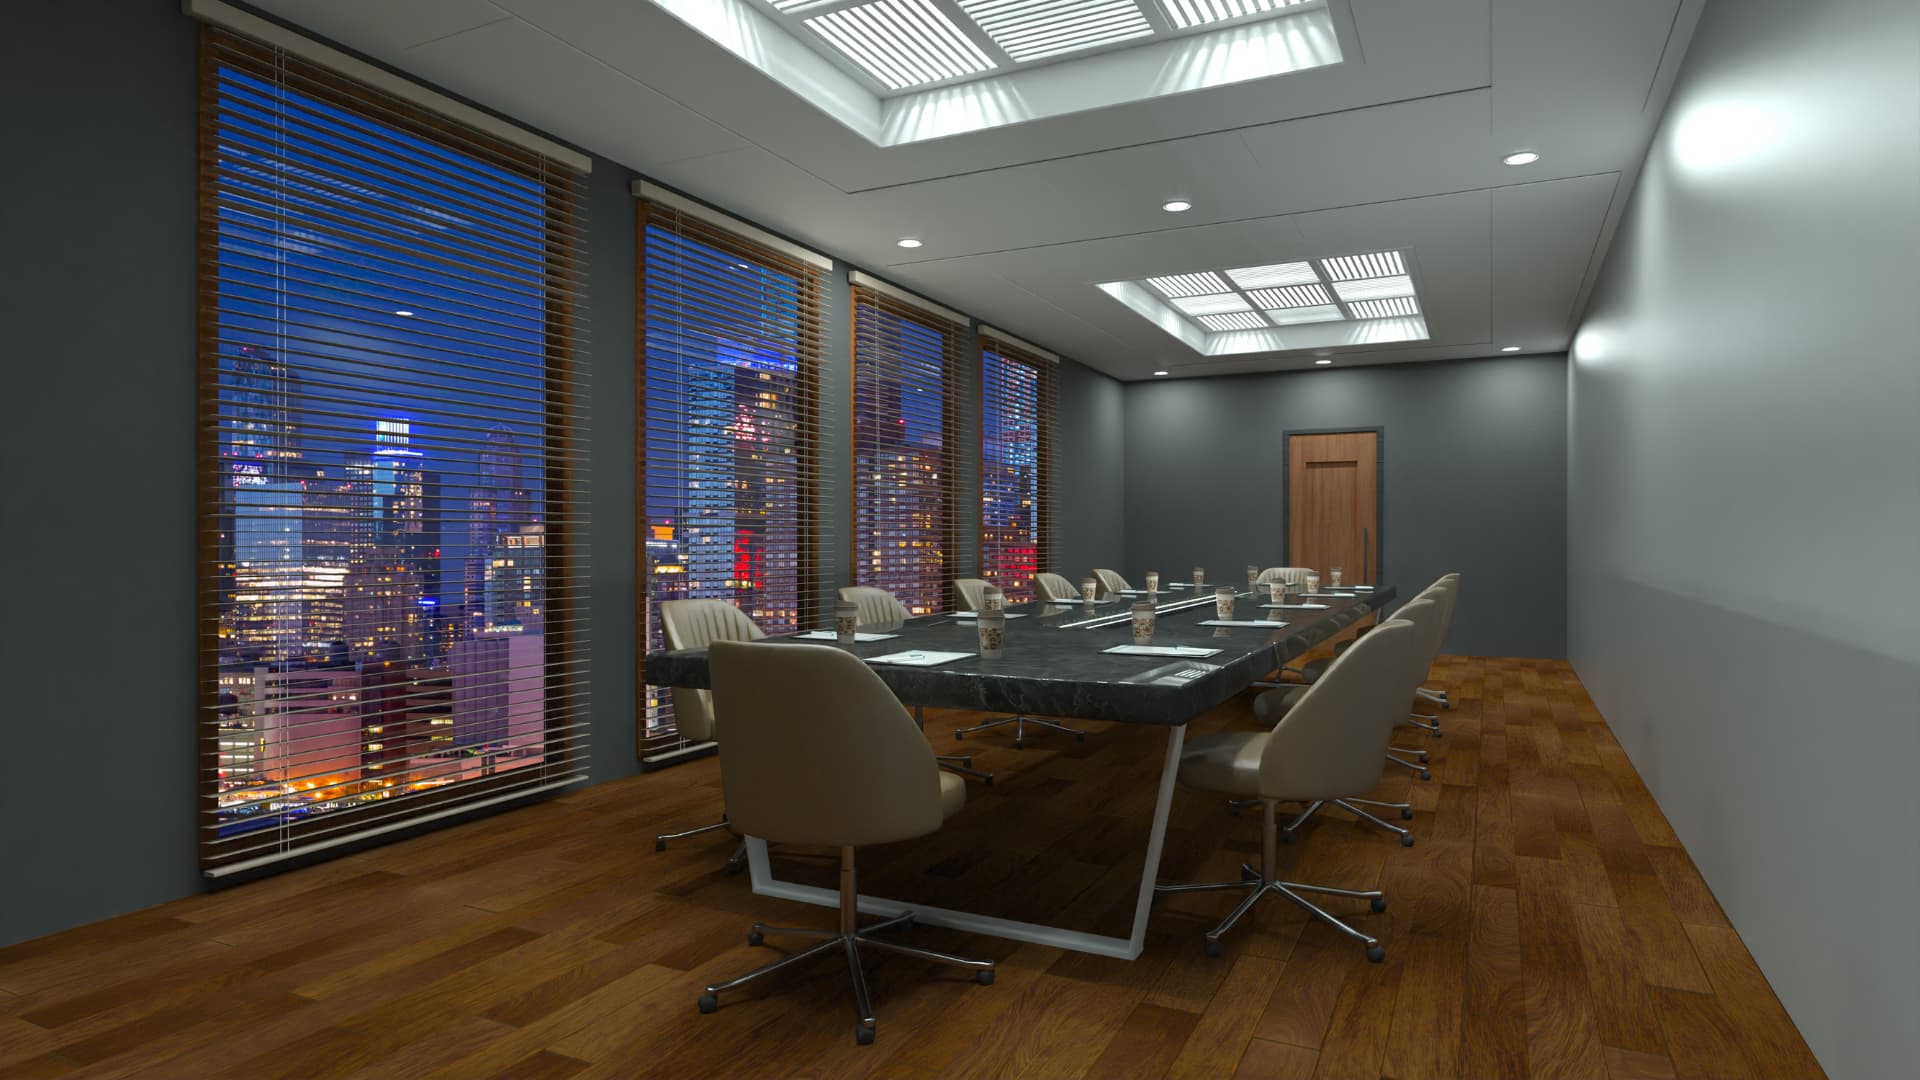 Descubra cuáles son los componentes que hacen de una sala de reuniones un entorno productivo y efectivo